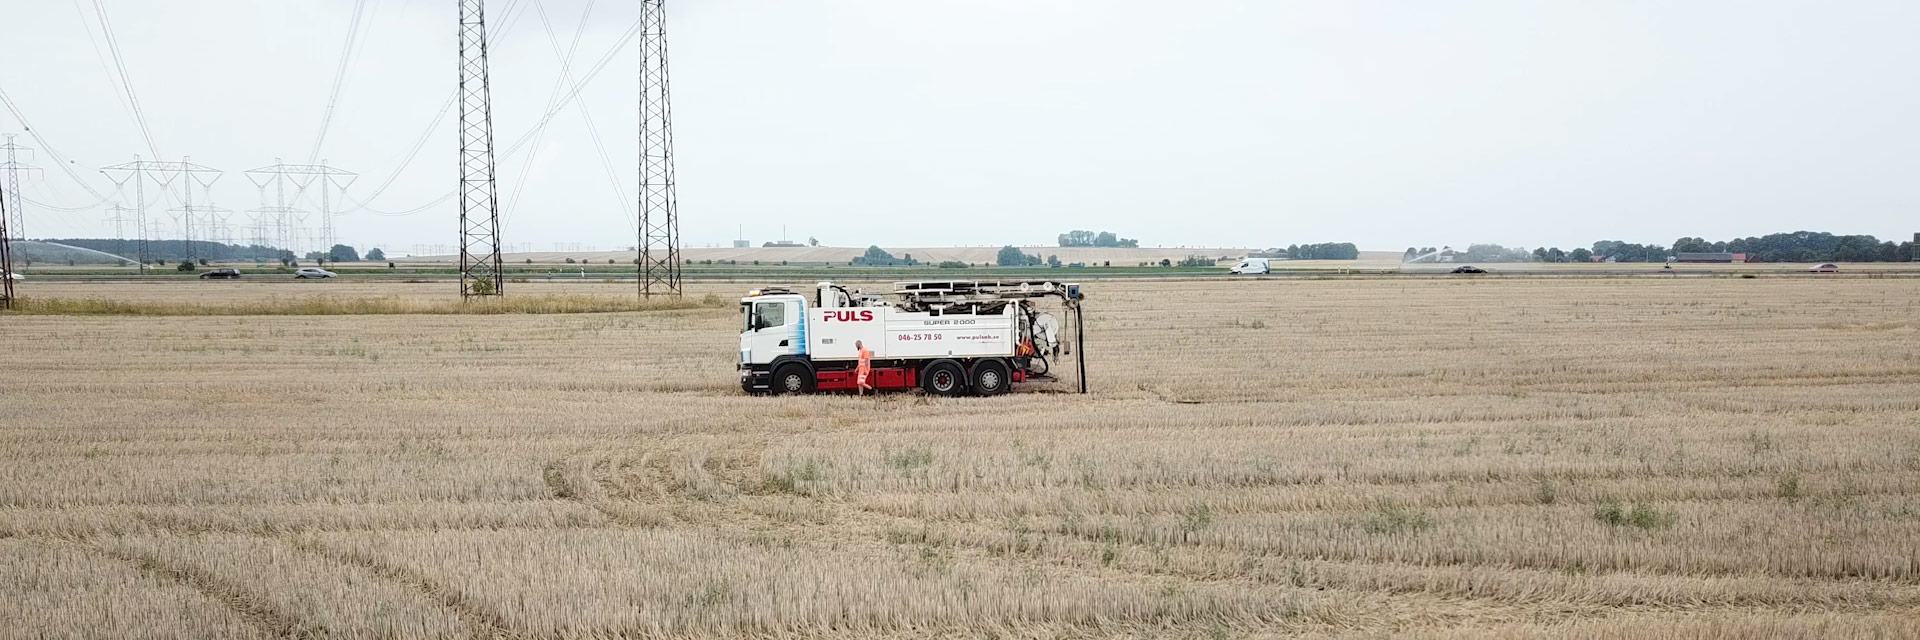 Puls AB lastbil står på en åker med kraftledningar i bakgrunden